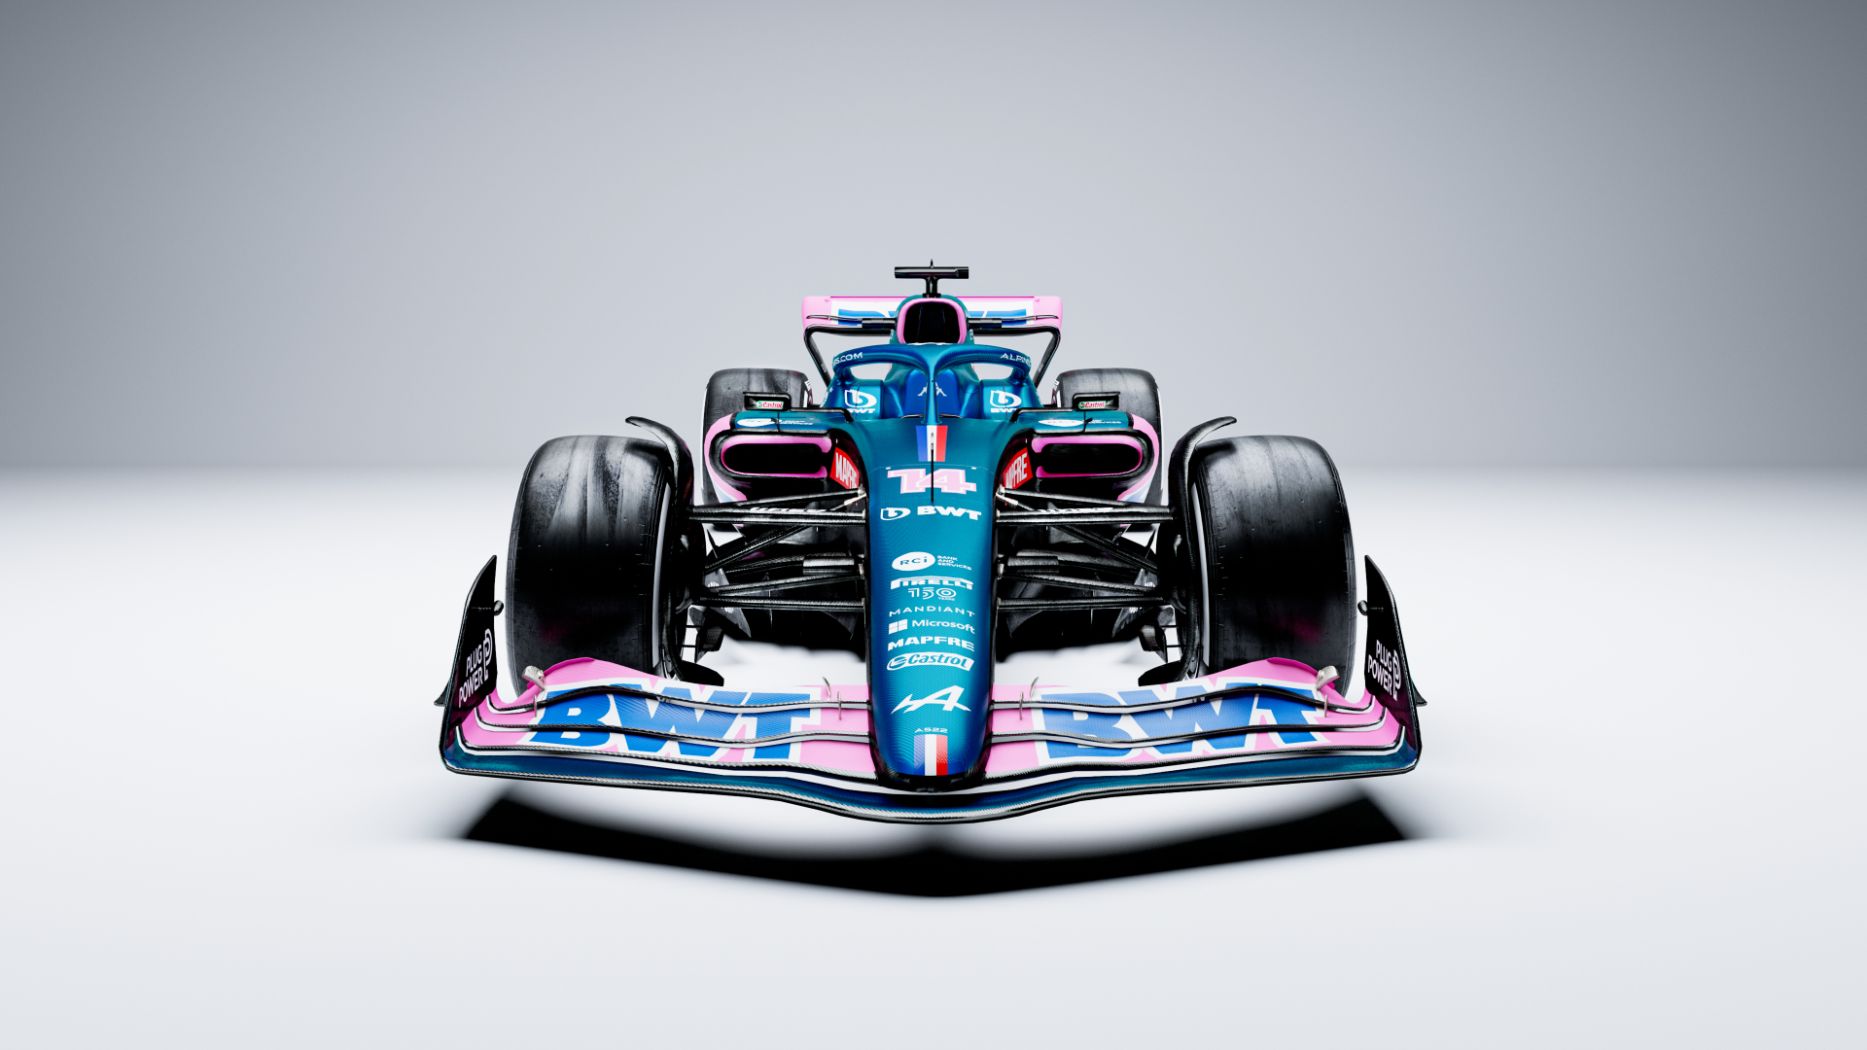 Alpine reveals 2022 Formula 1 car, the A522